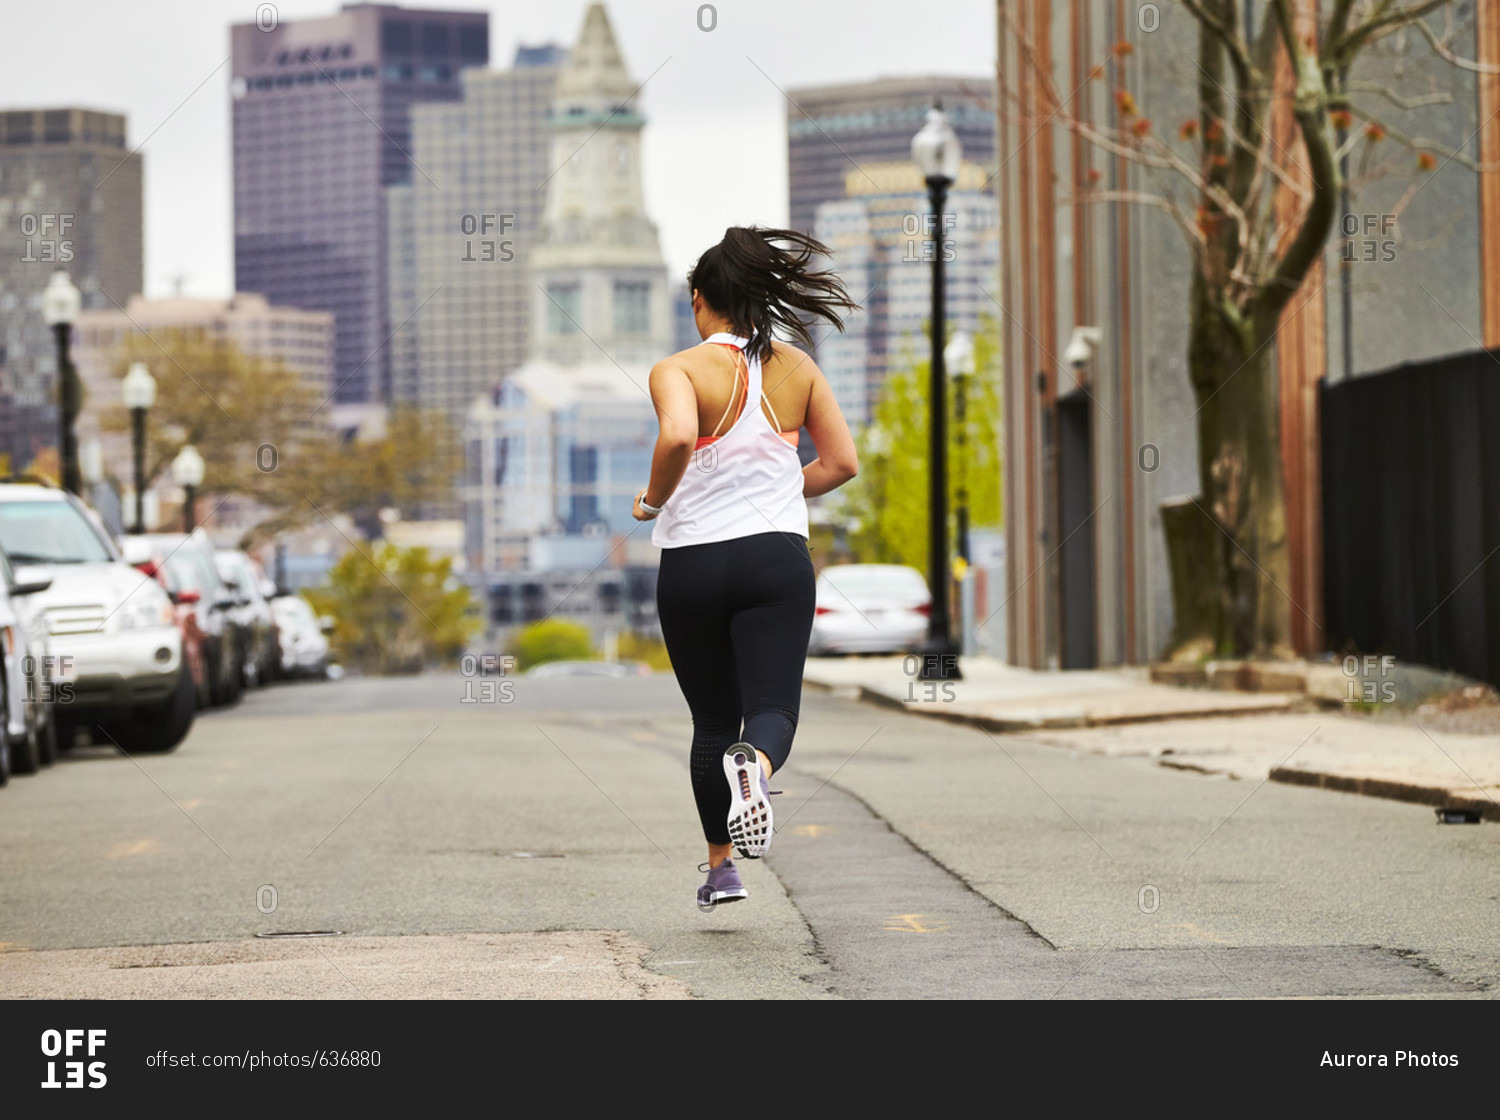 A female runner running towards the Boston skyline.